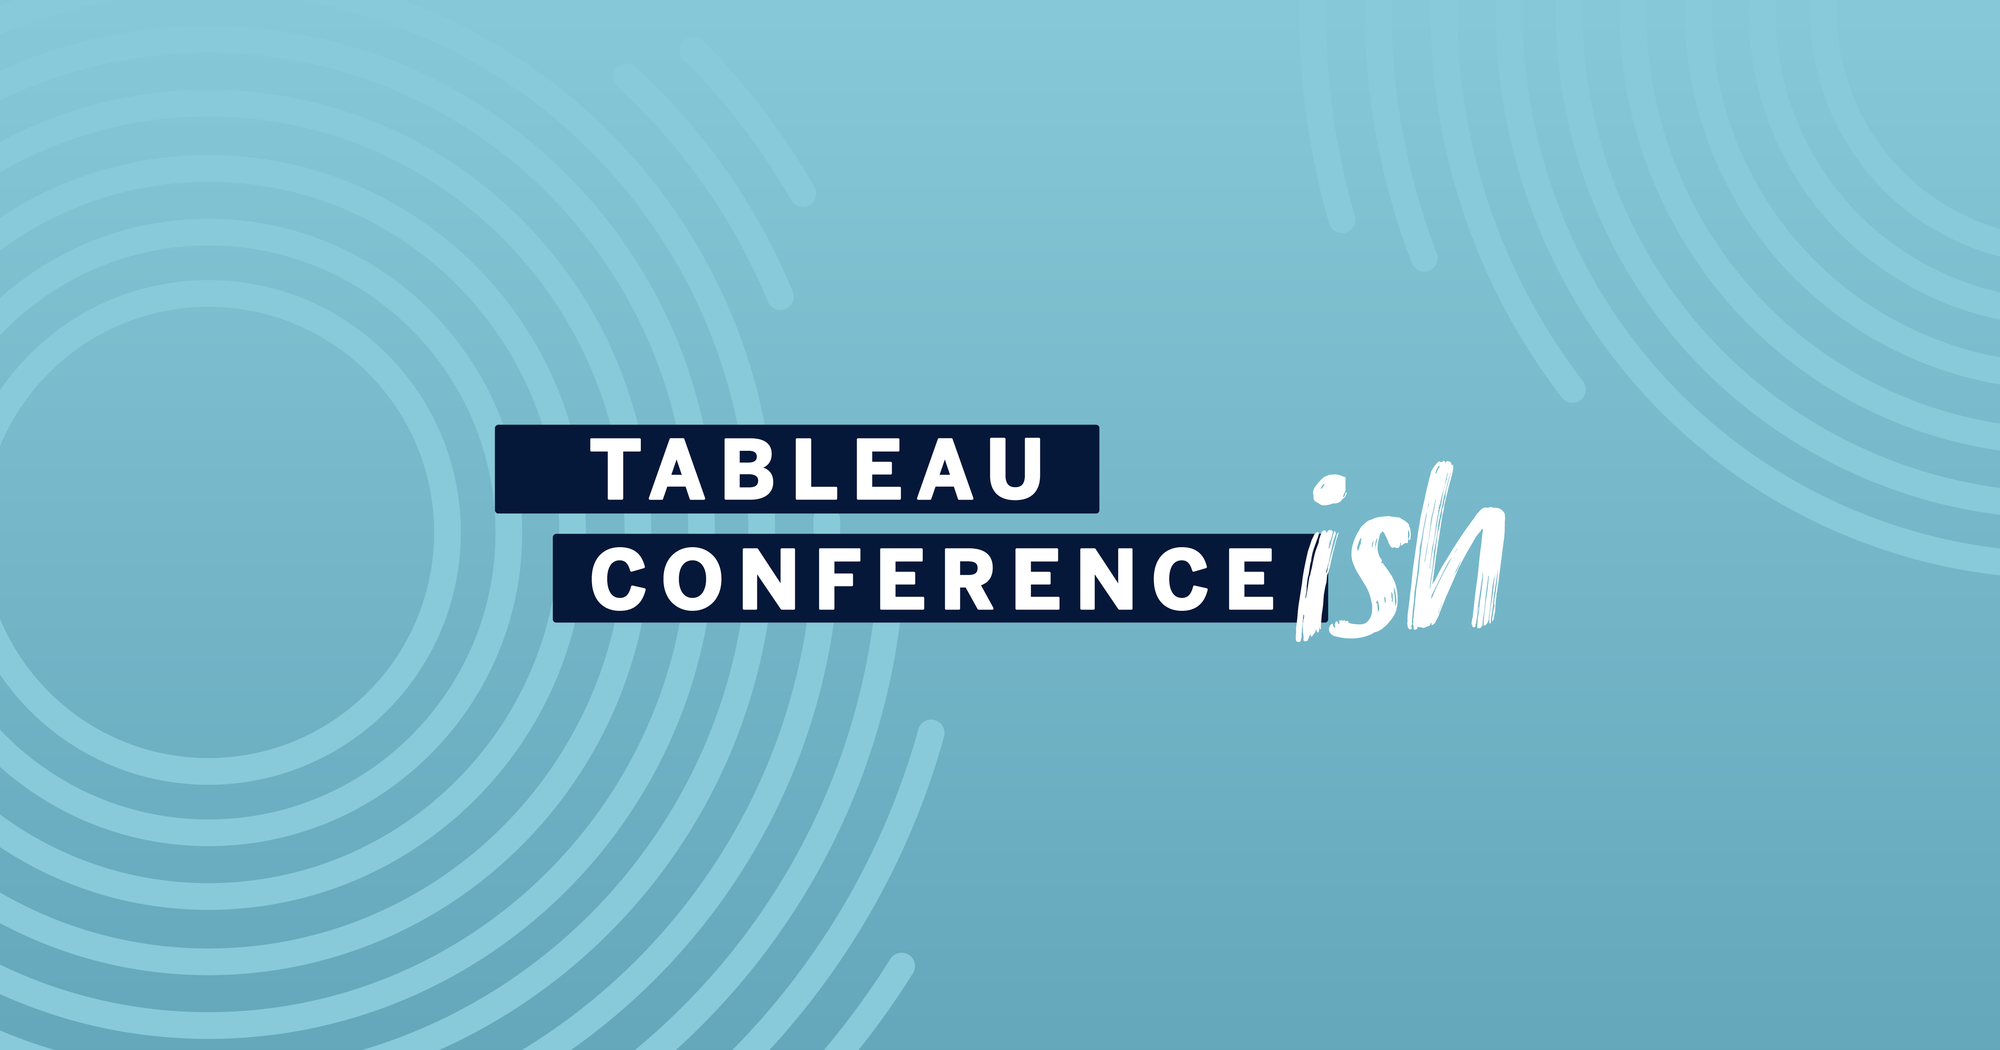 Tableau Conference 2020 Register